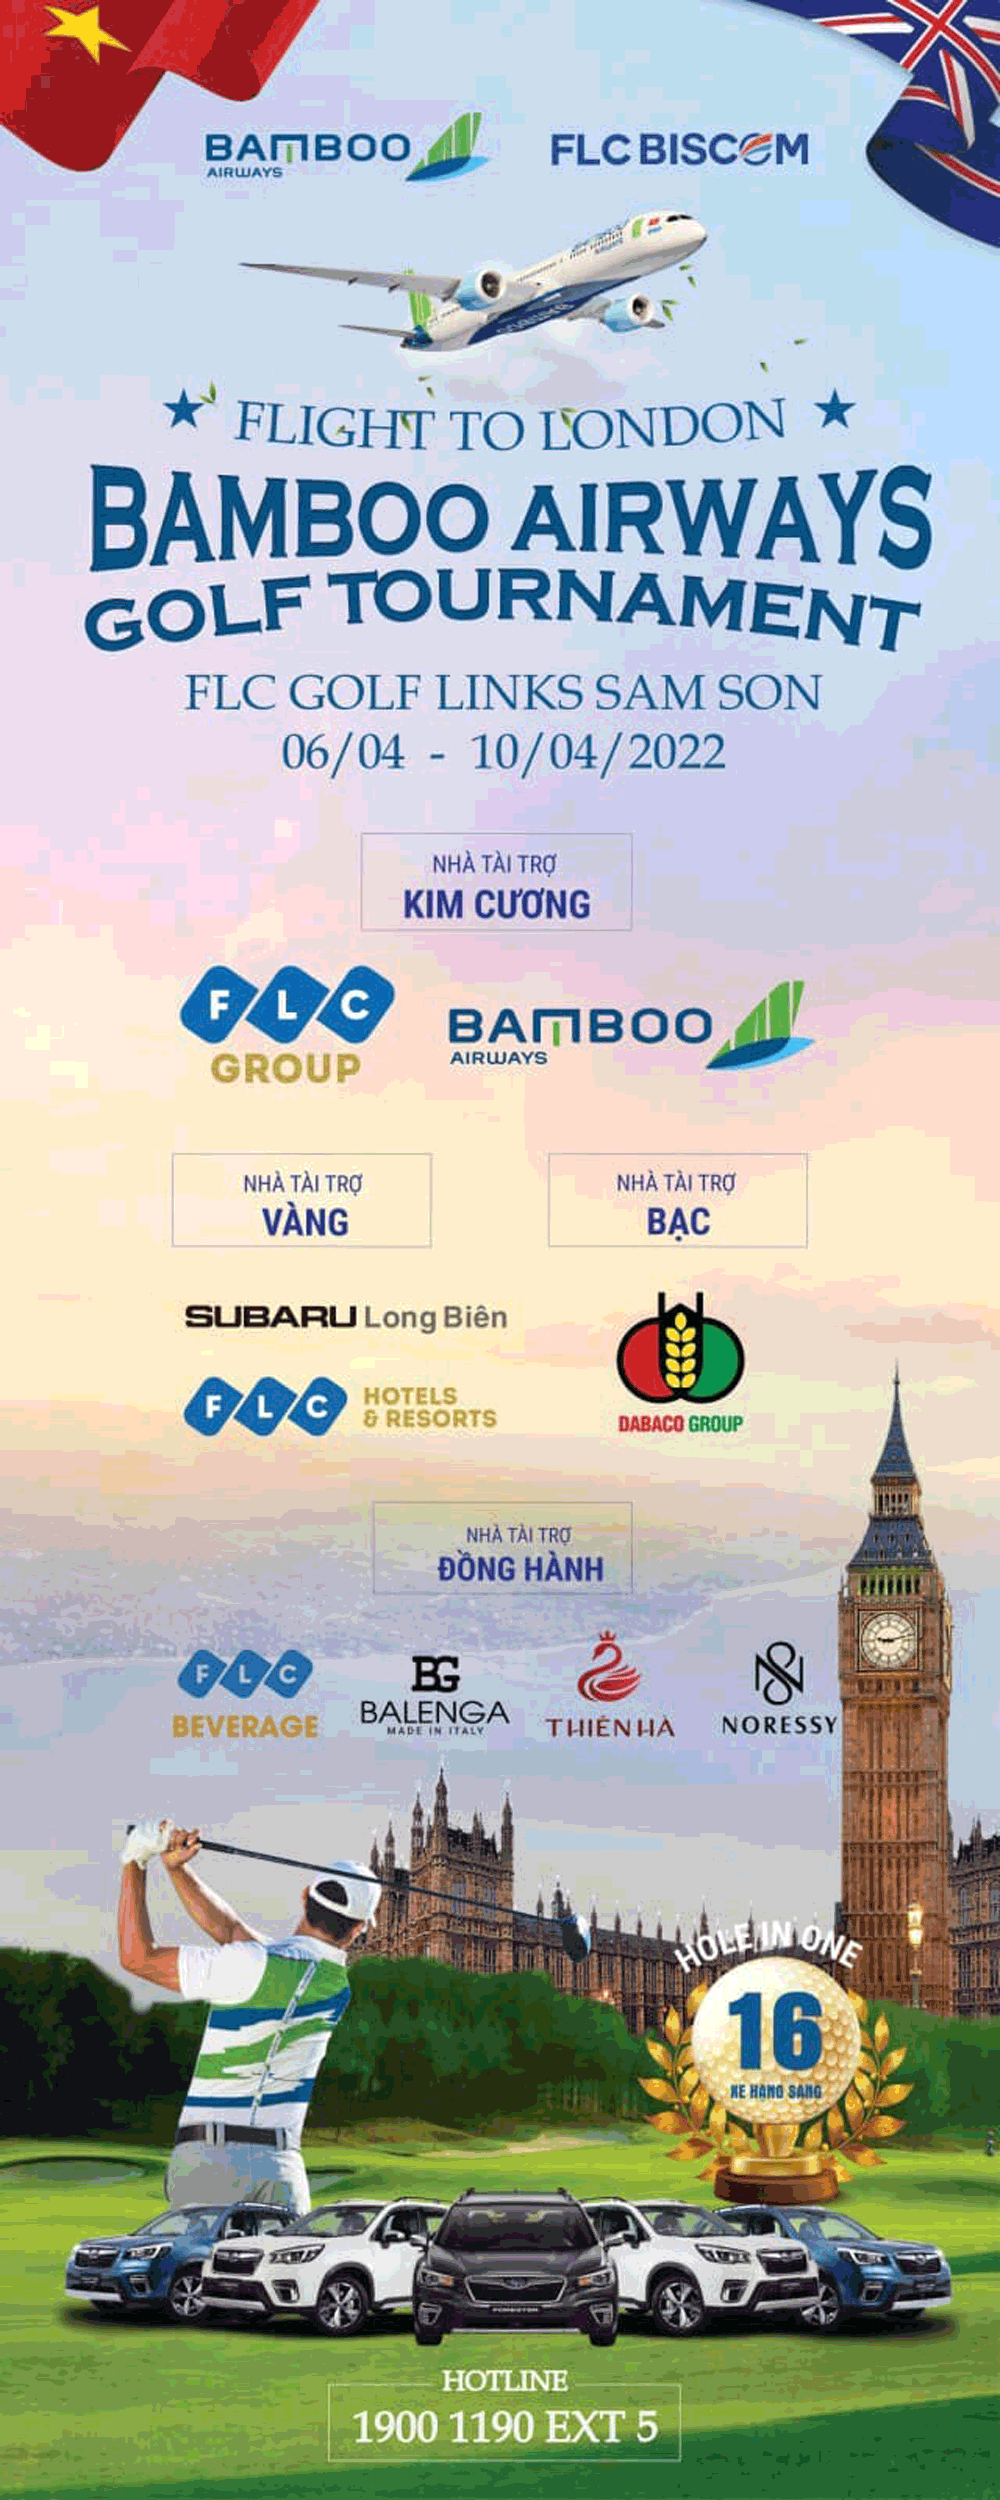 Subaru Long Biên : Nhà tài trợ vàng cho giải đấu Bamboo Airways Golf Tournament 2022 – Flight to London